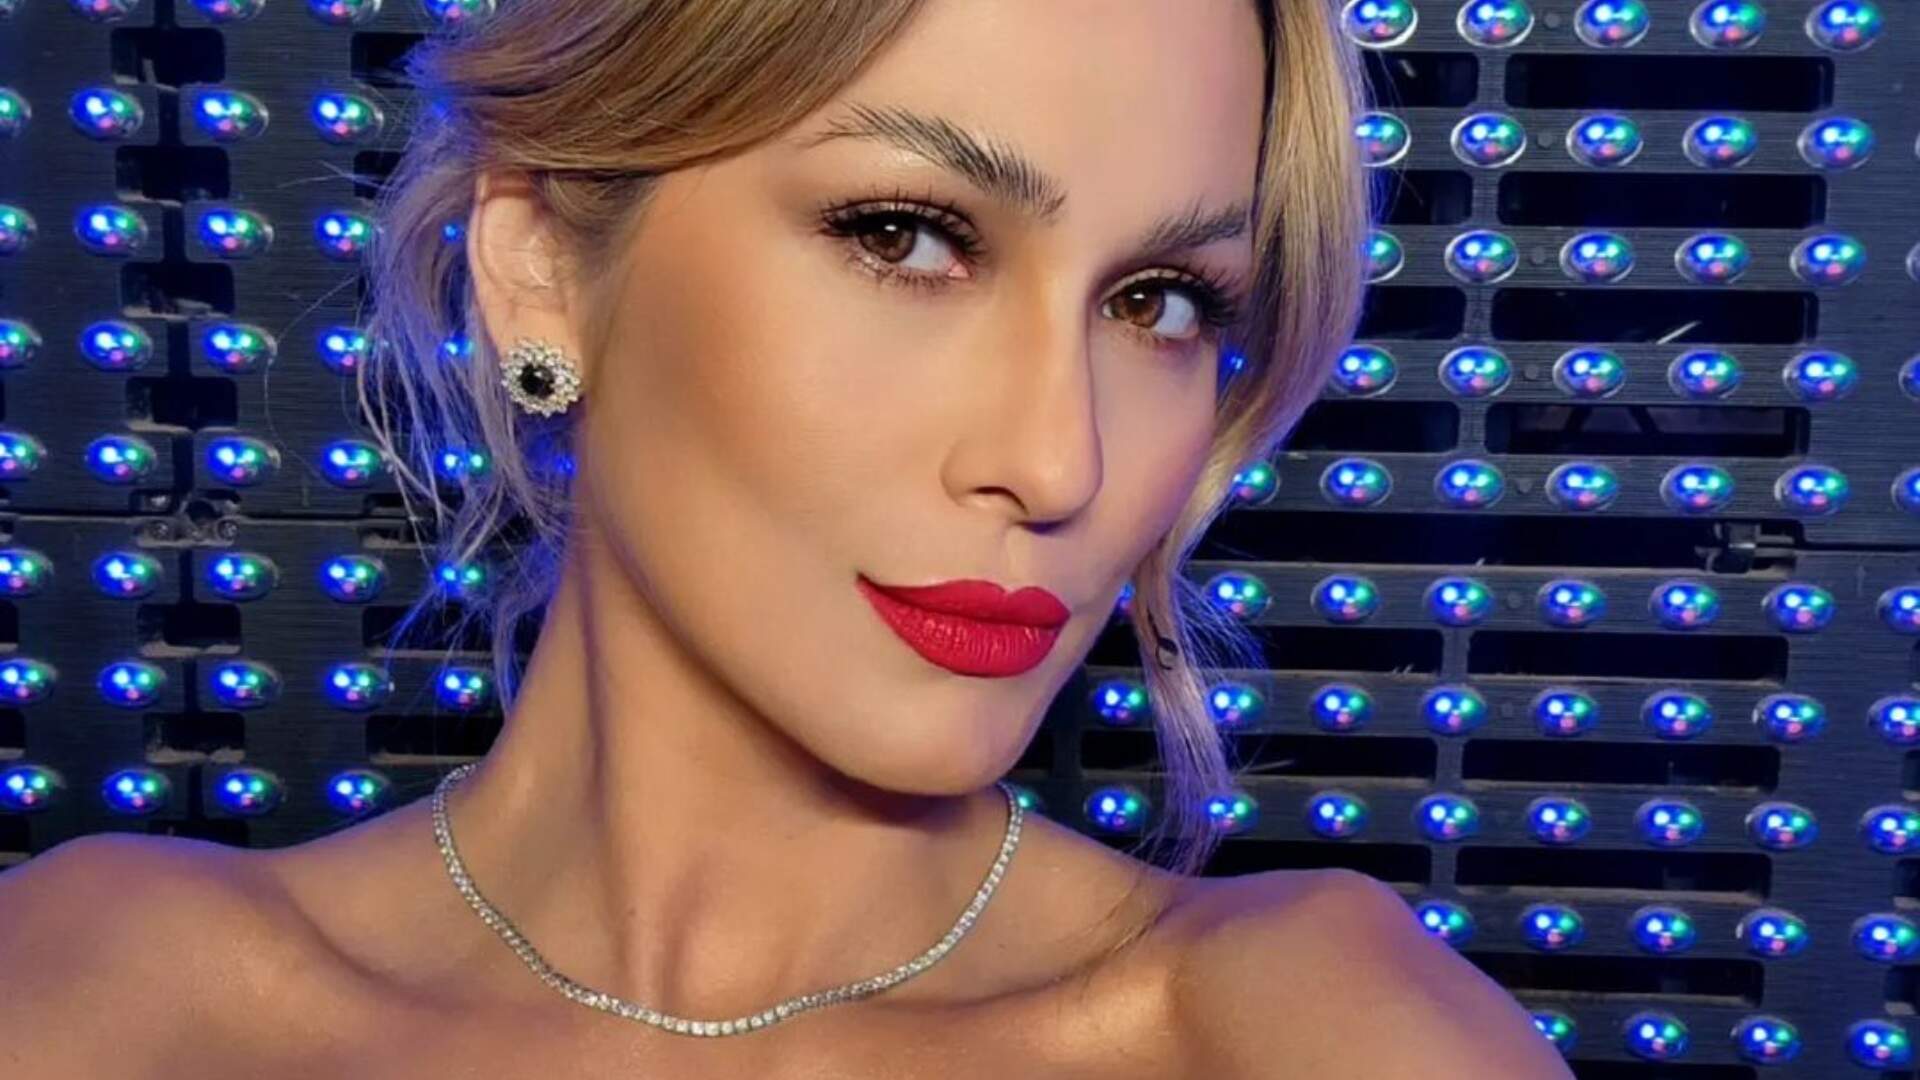 Transparente demais? Lívia Andrade deixa lingerie à mostra no vestido: “Escapou no ao vivo” - Metropolitana FM